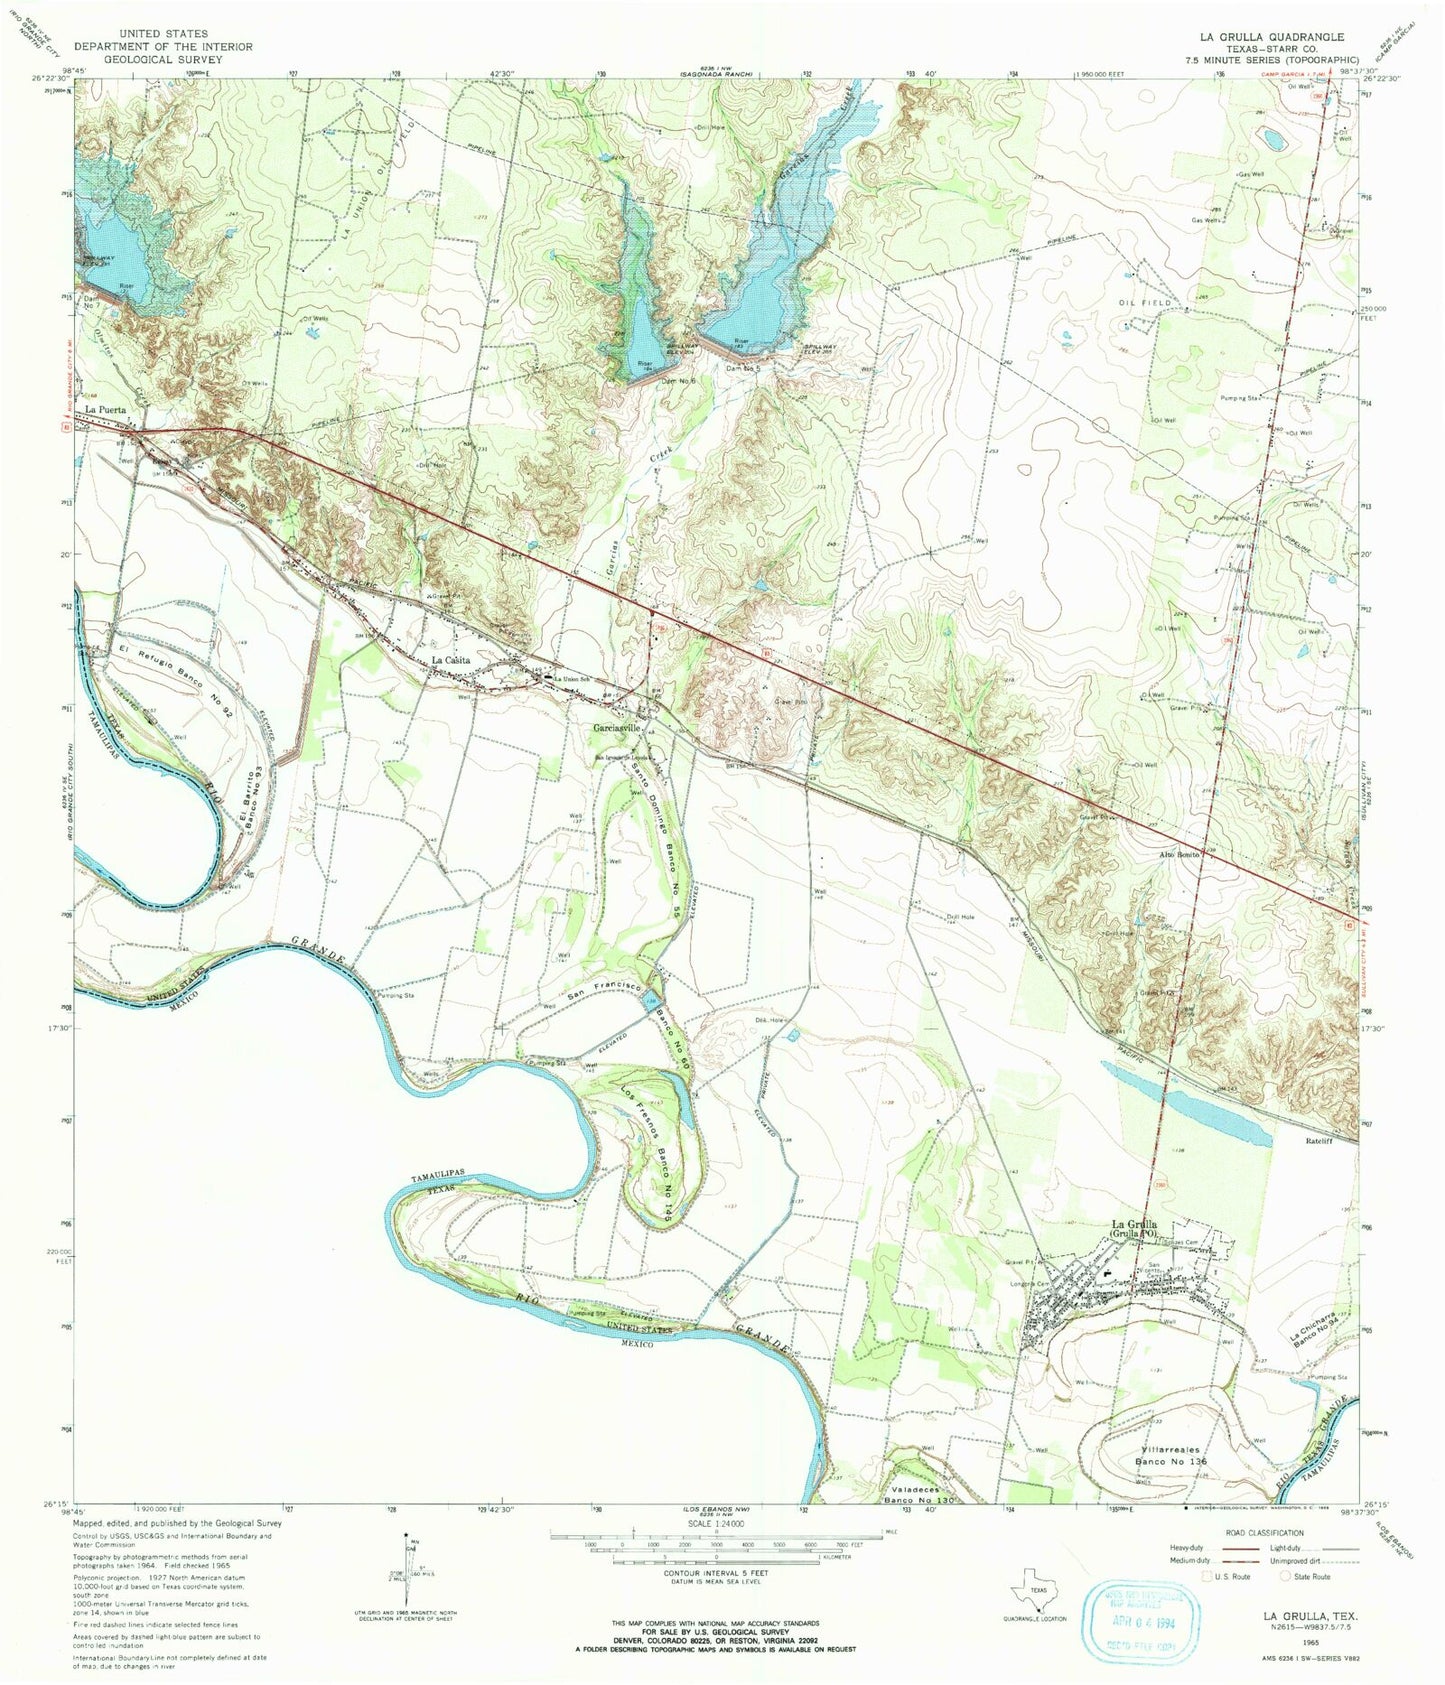 Classic USGS La Grulla Texas 7.5'x7.5' Topo Map Image